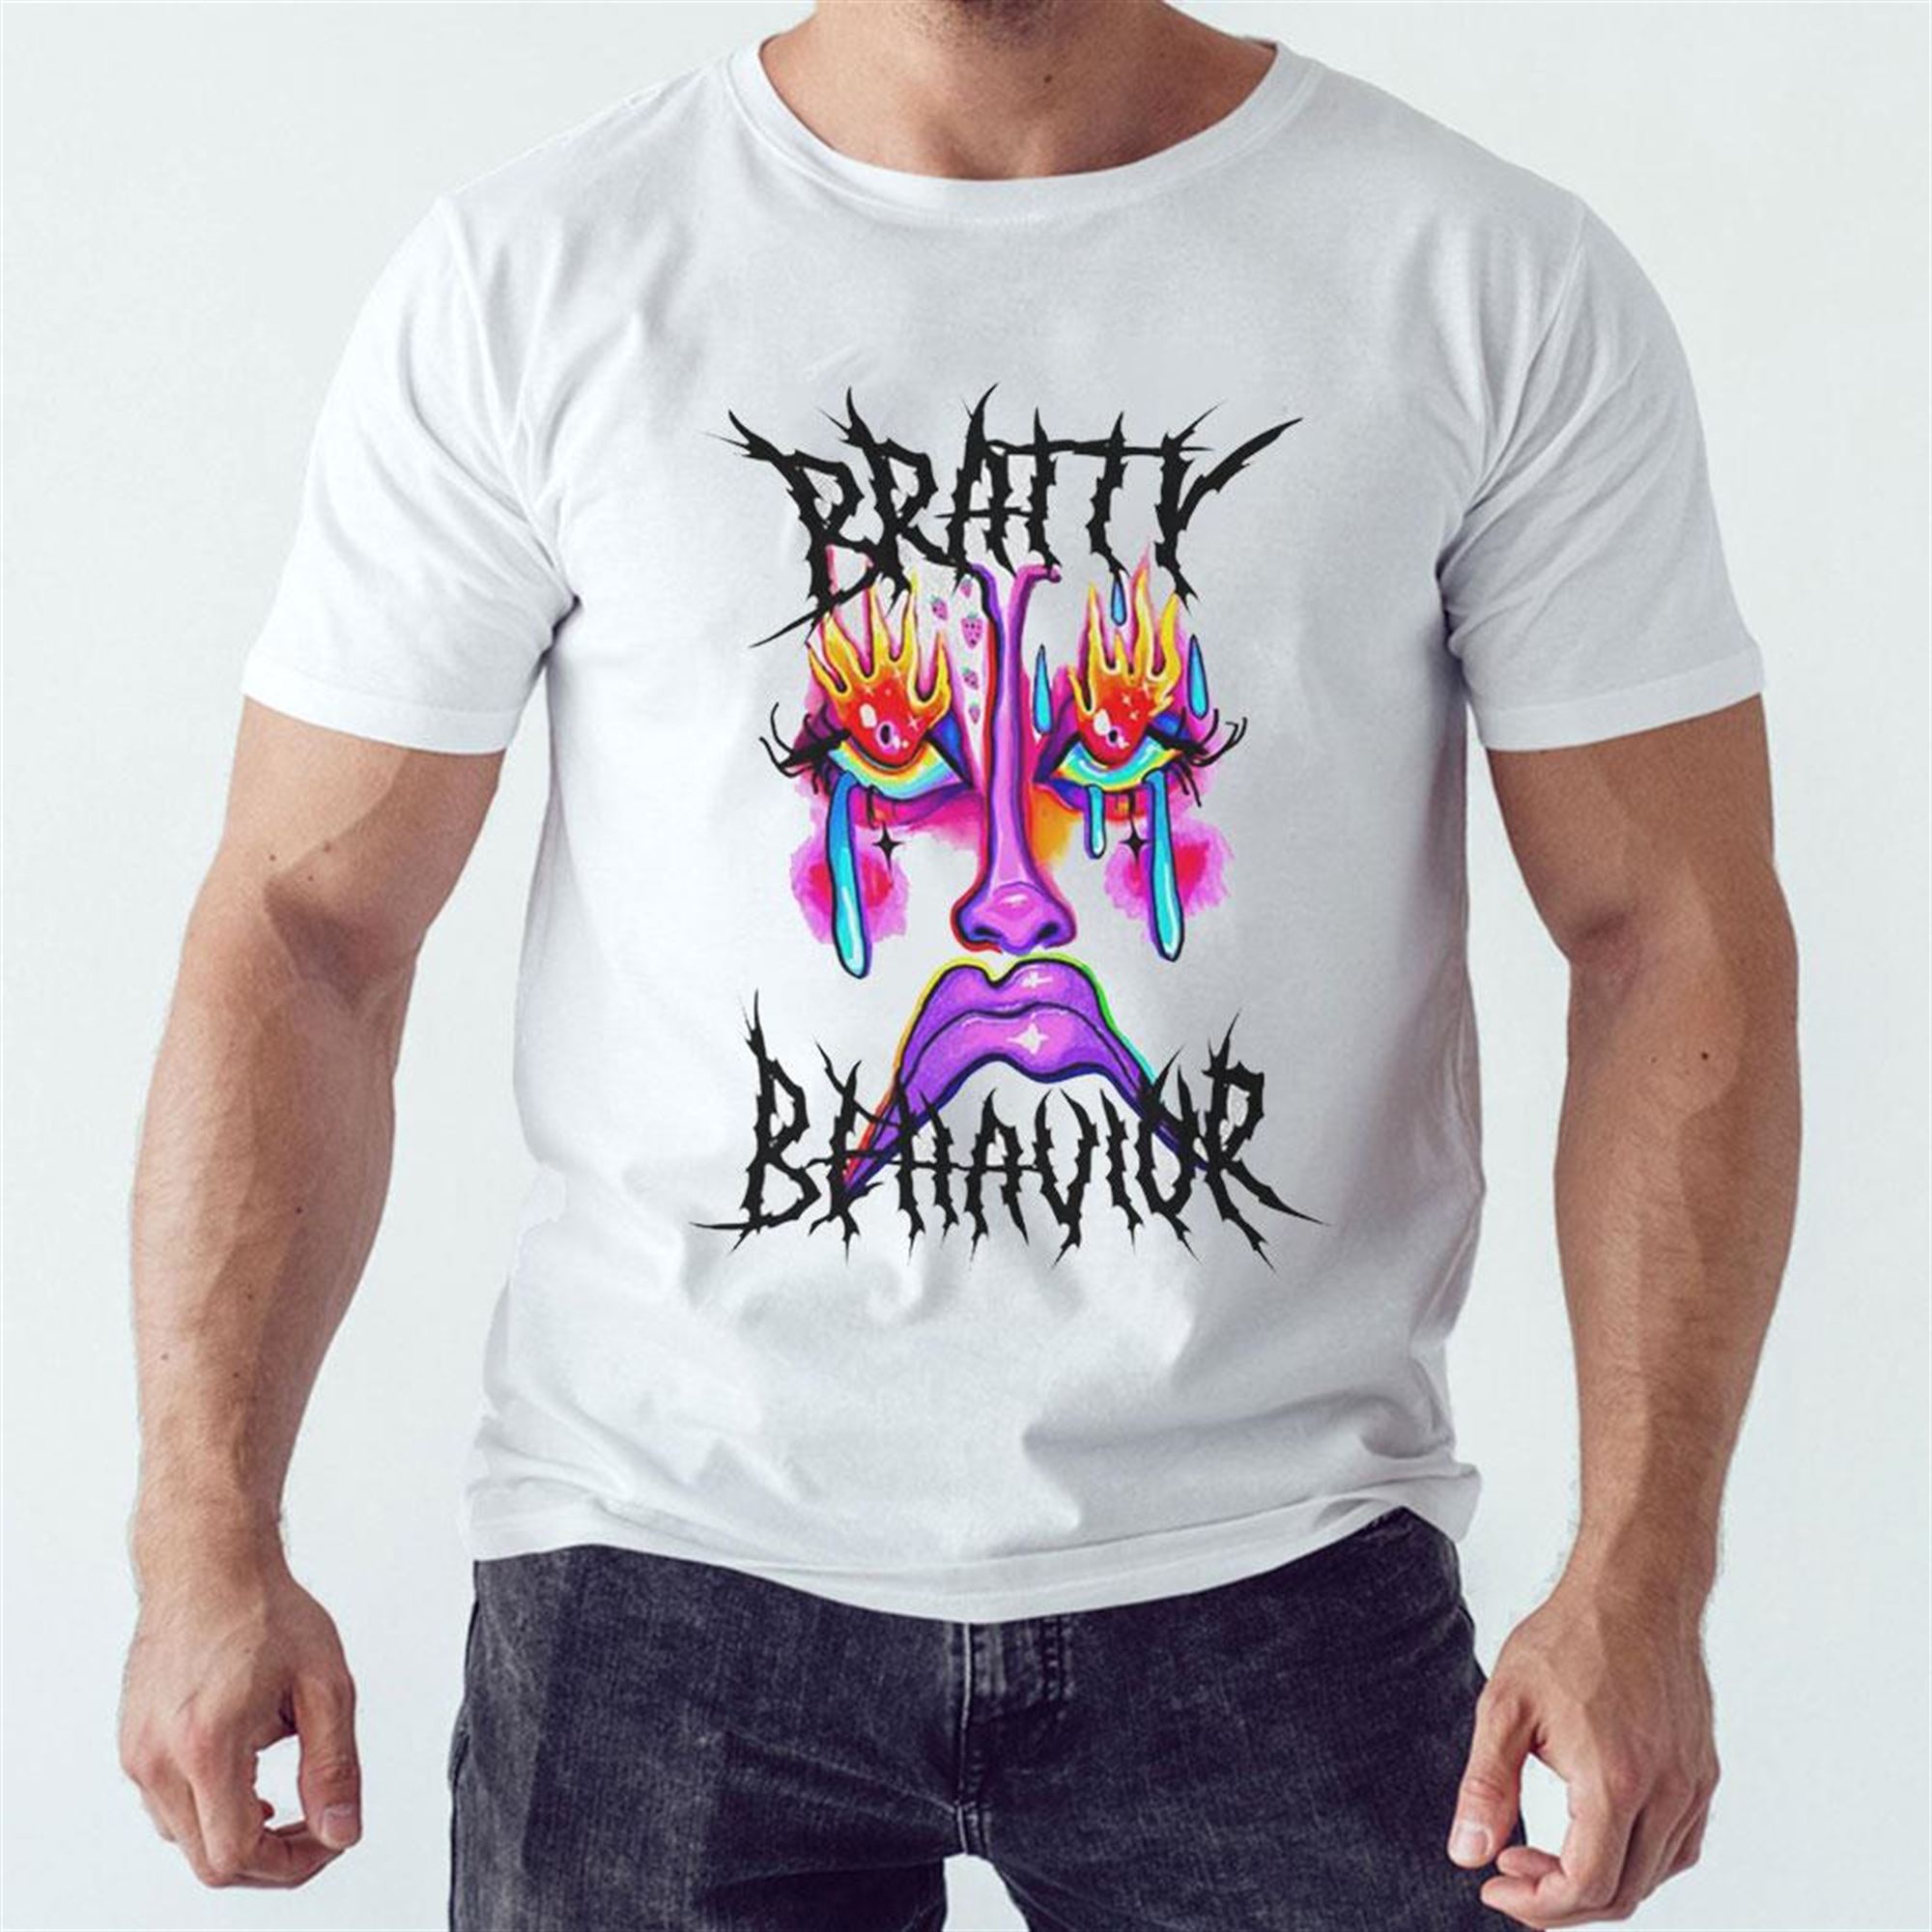 Official Bratty Behavior Face Art T-shirt